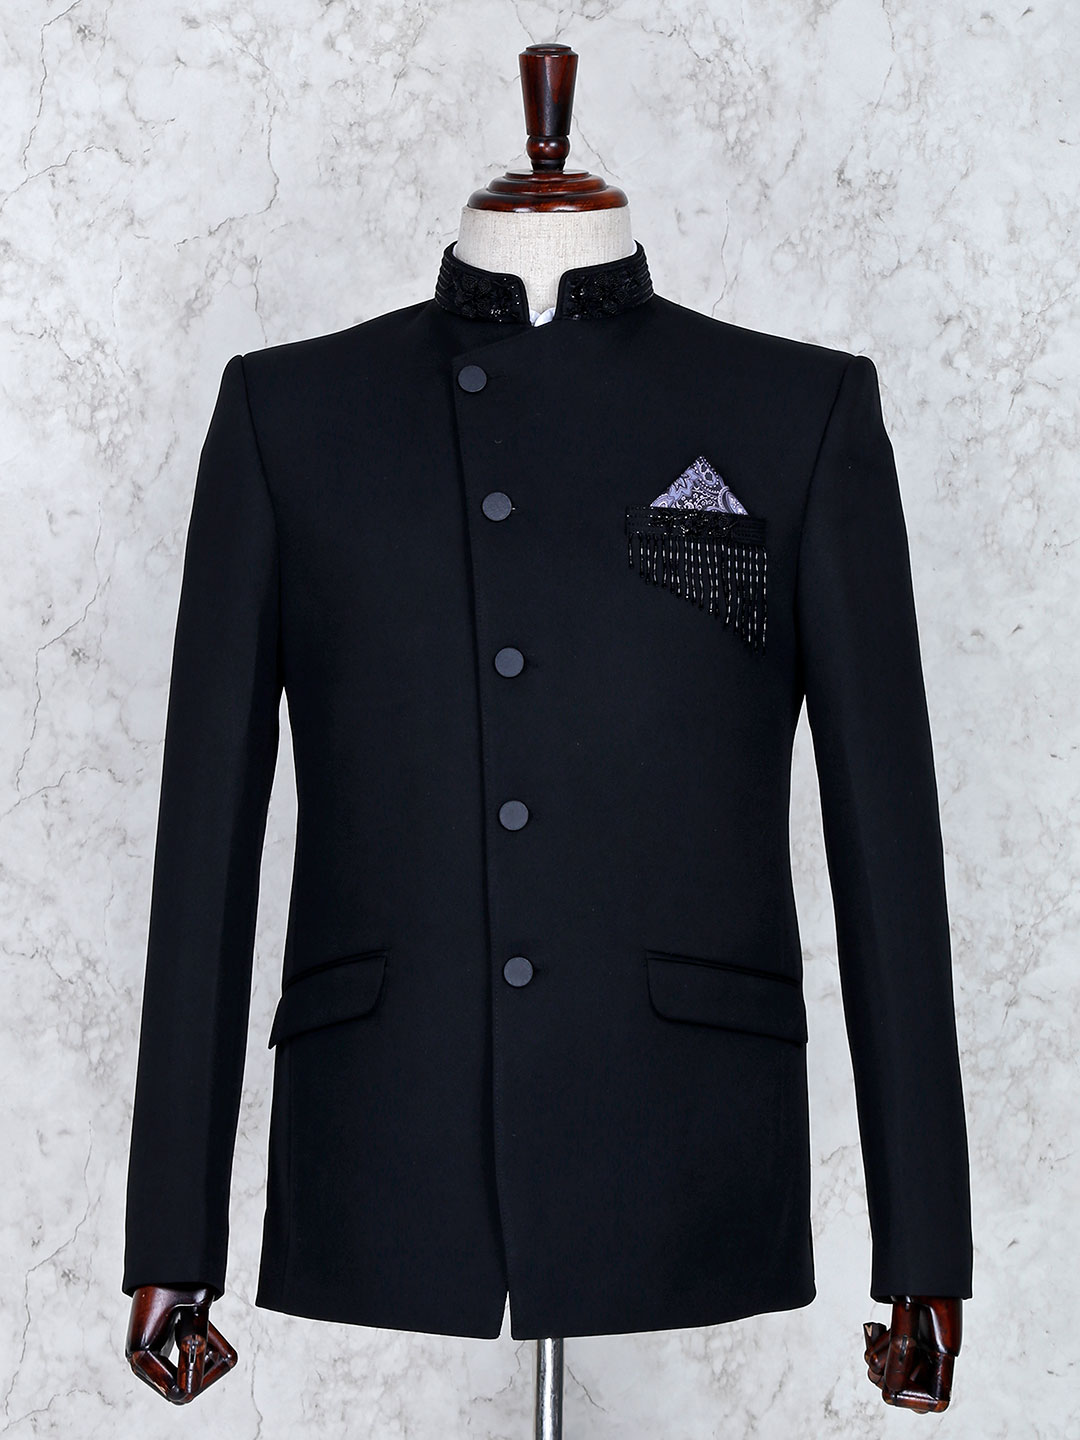 Mens Coat Suits 2019: Buy Online Mens Tuxedo Coat Suit, Jodhpuri Coat Suits